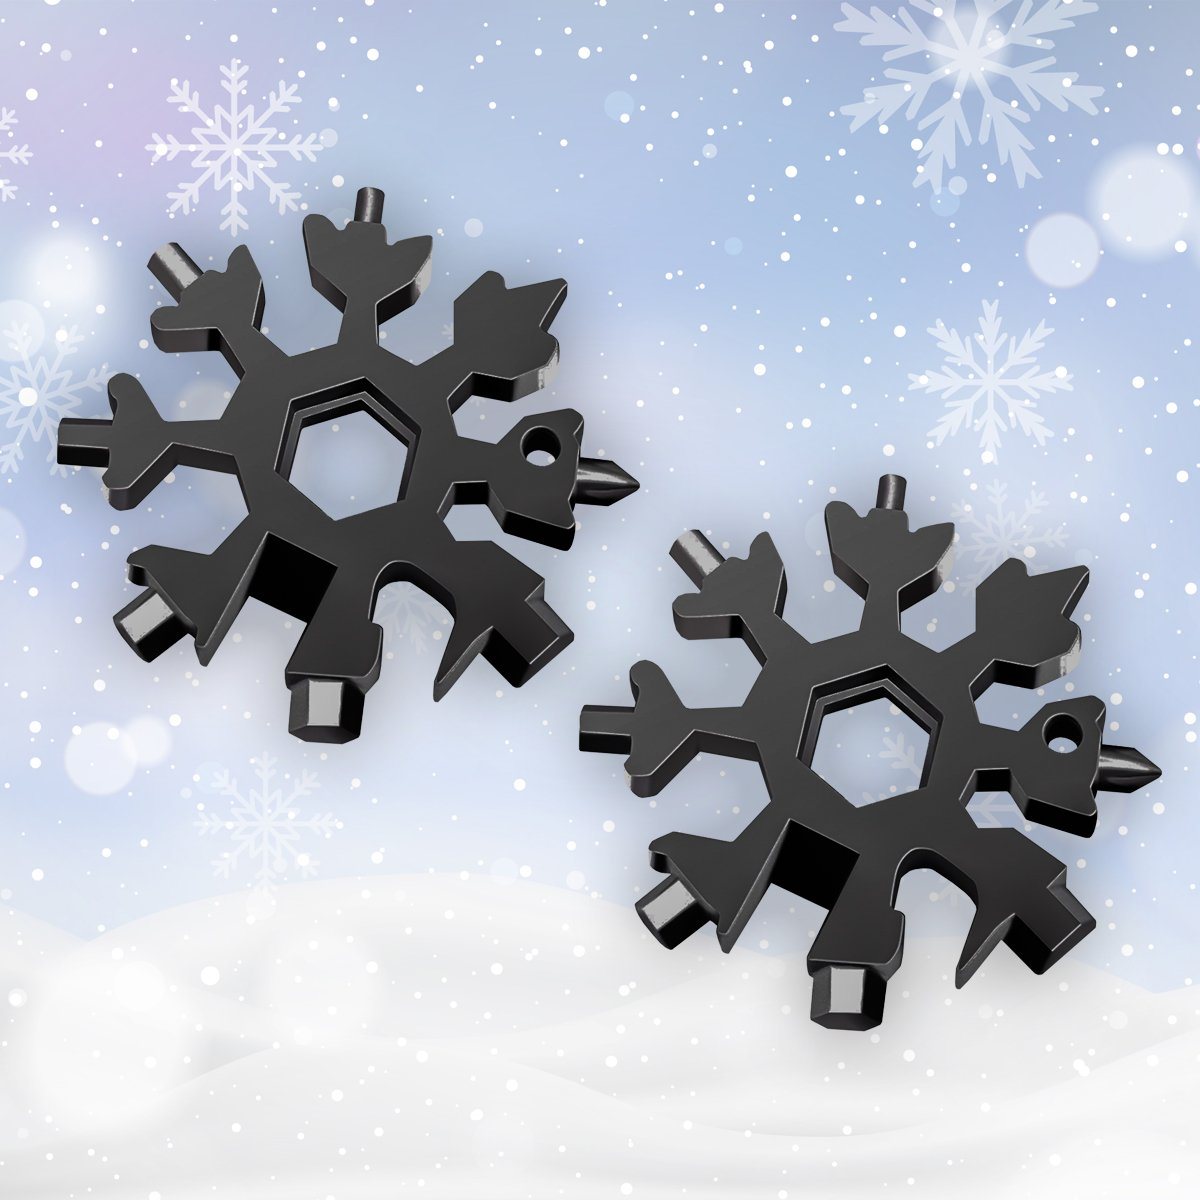 Amenitee 18-in-1 snowflakes multi-tool MULTITOOLS smartsaker black*2 